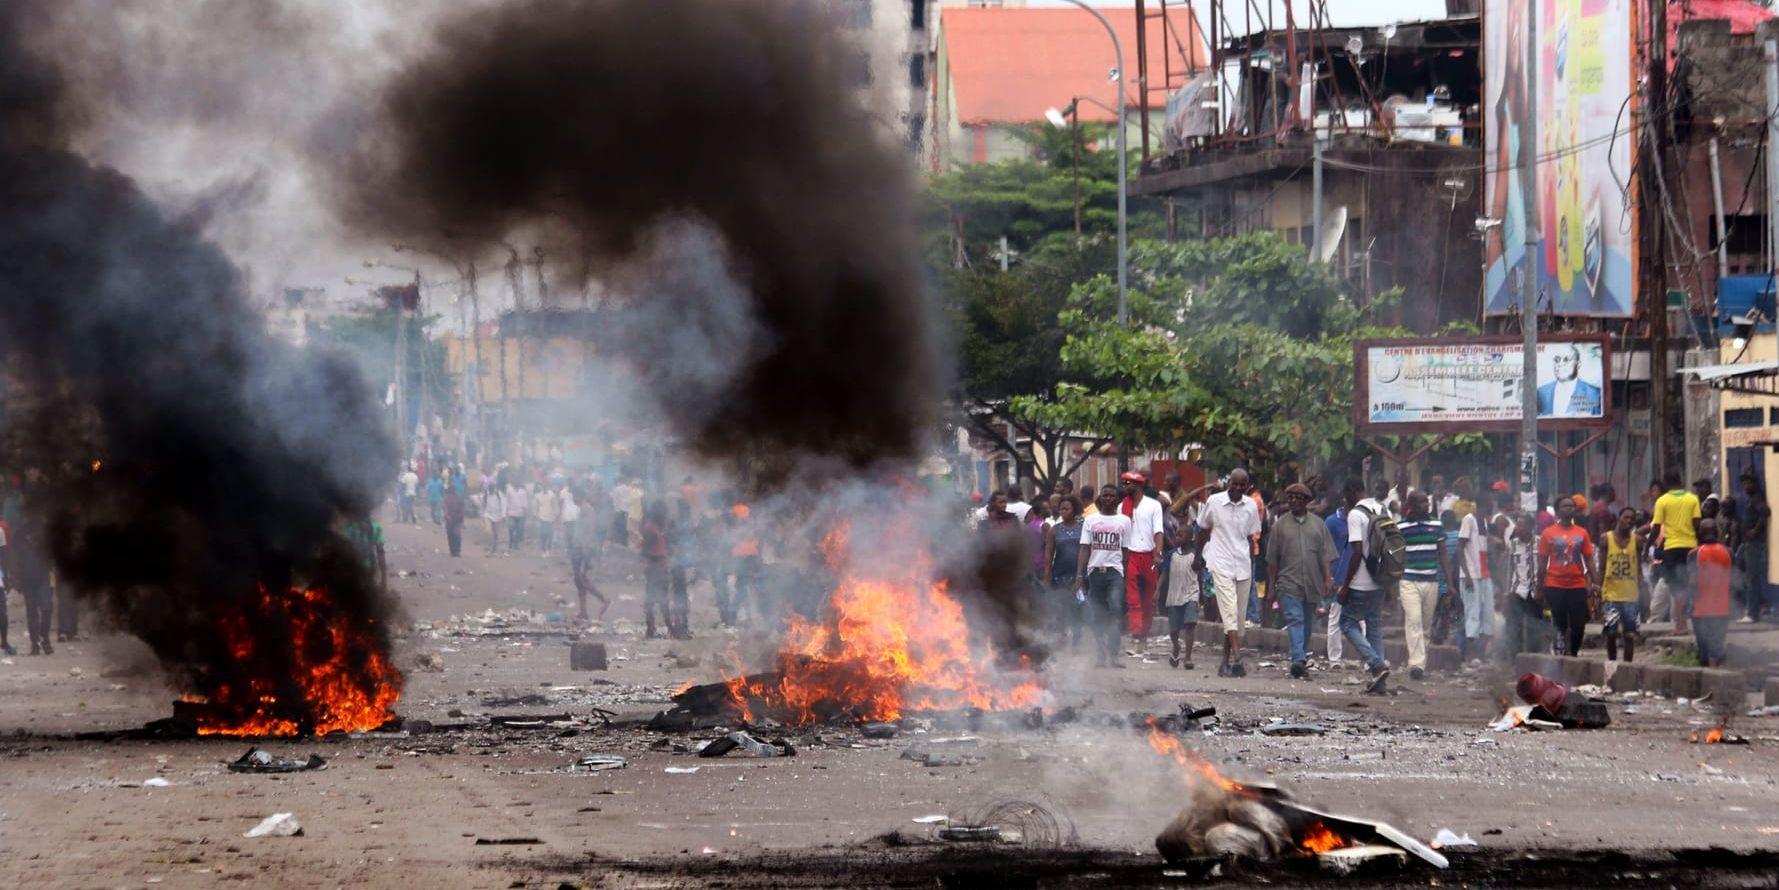 Härjat land. Våldsamma protester i huvudstaden Kinshasa förra året mot regimen under president Joseph Kabila. Krisen i landet fortsätter med strider, politisk oro, rättsövergrepp och miljoner invånare på flykt från sina hem.